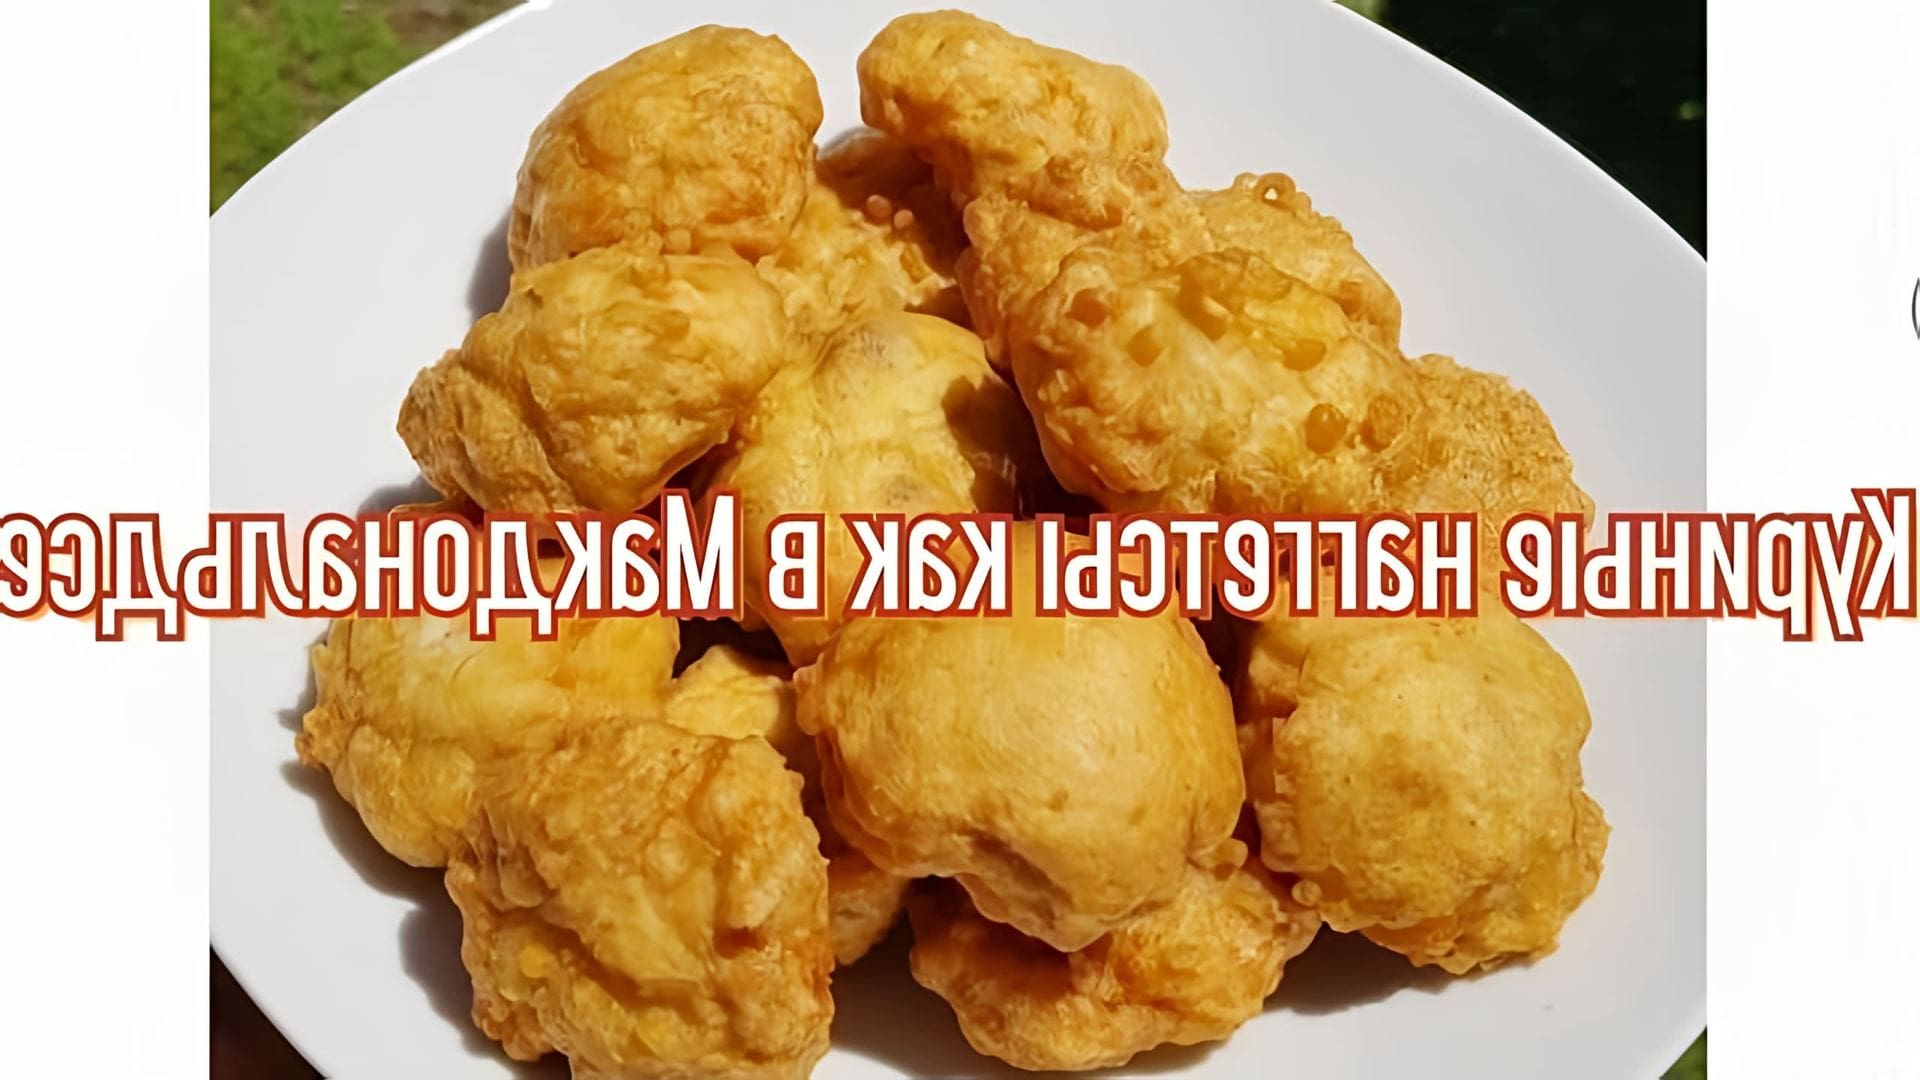 В этом видео демонстрируется рецепт приготовления куриных наггетсов, как в Макдональдсе